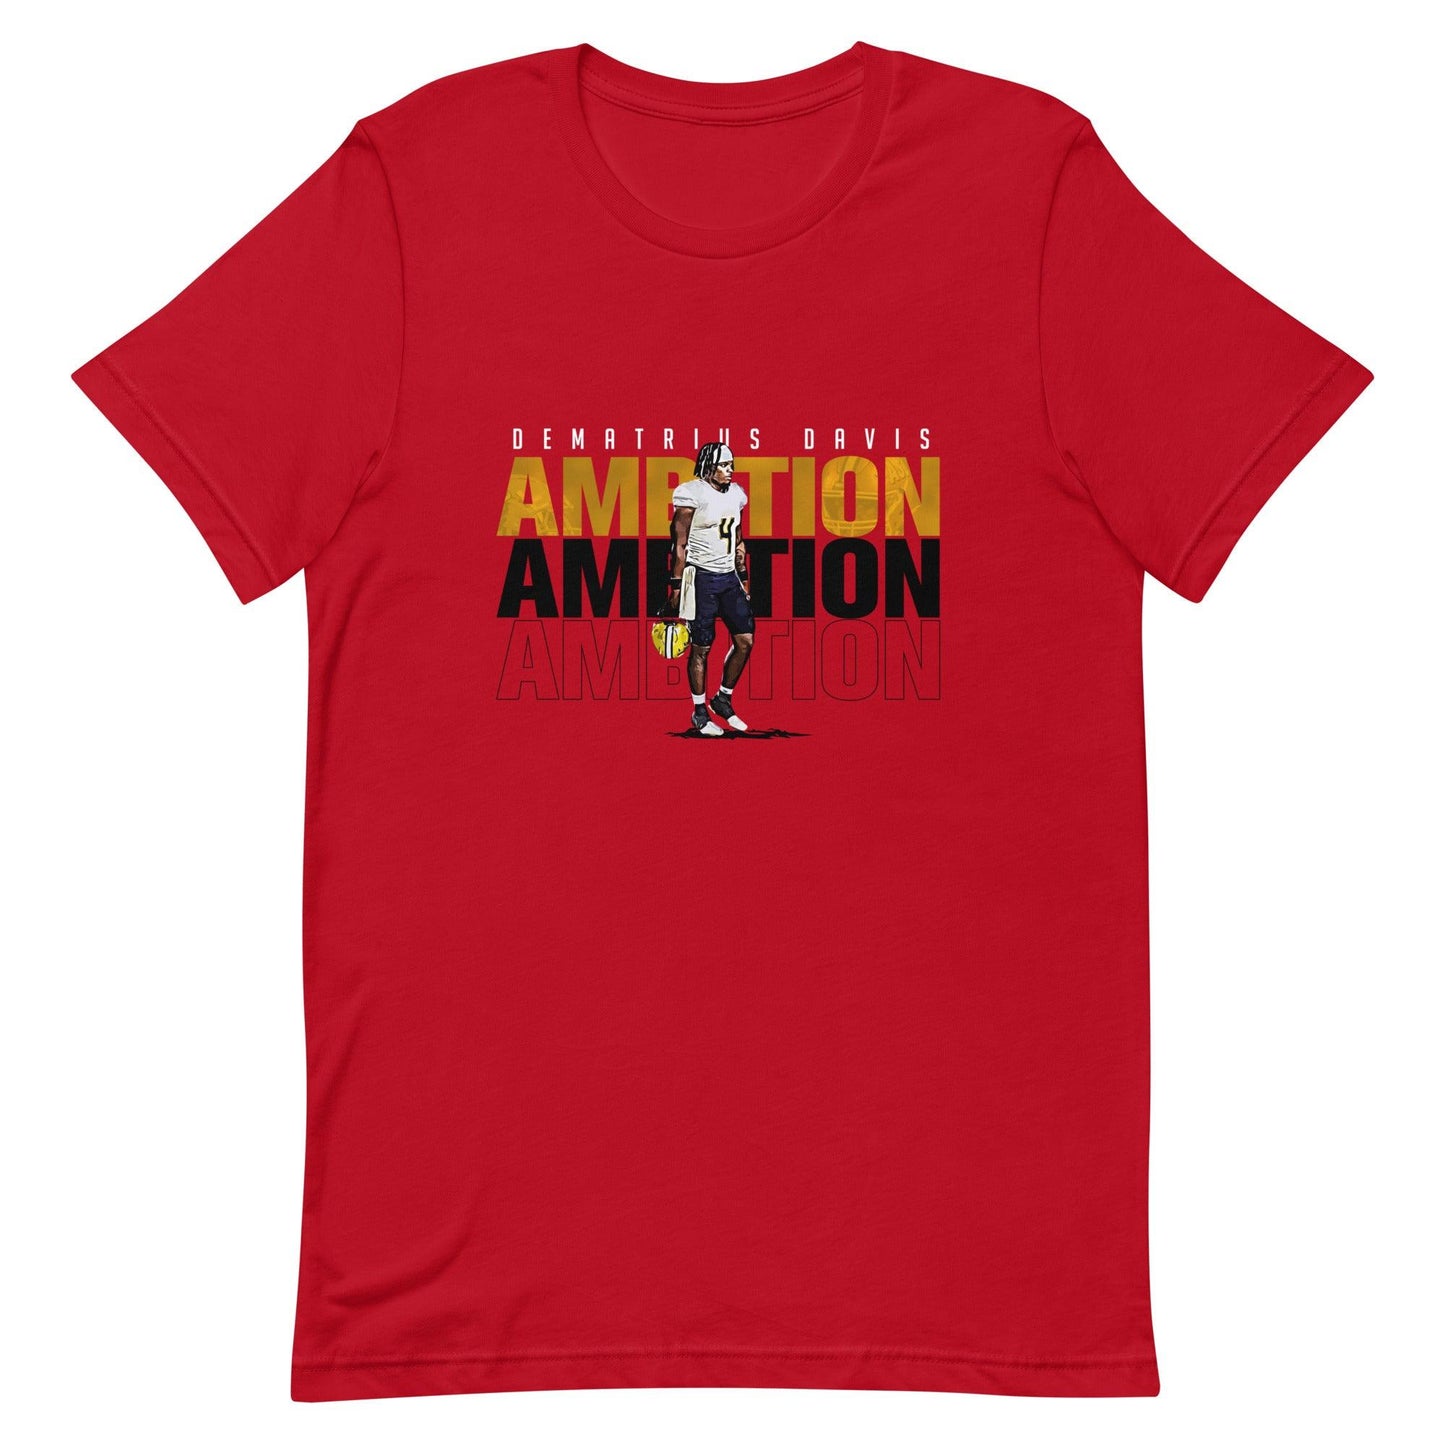 Dematrius Davis "Ambitions" t-shirt - Fan Arch